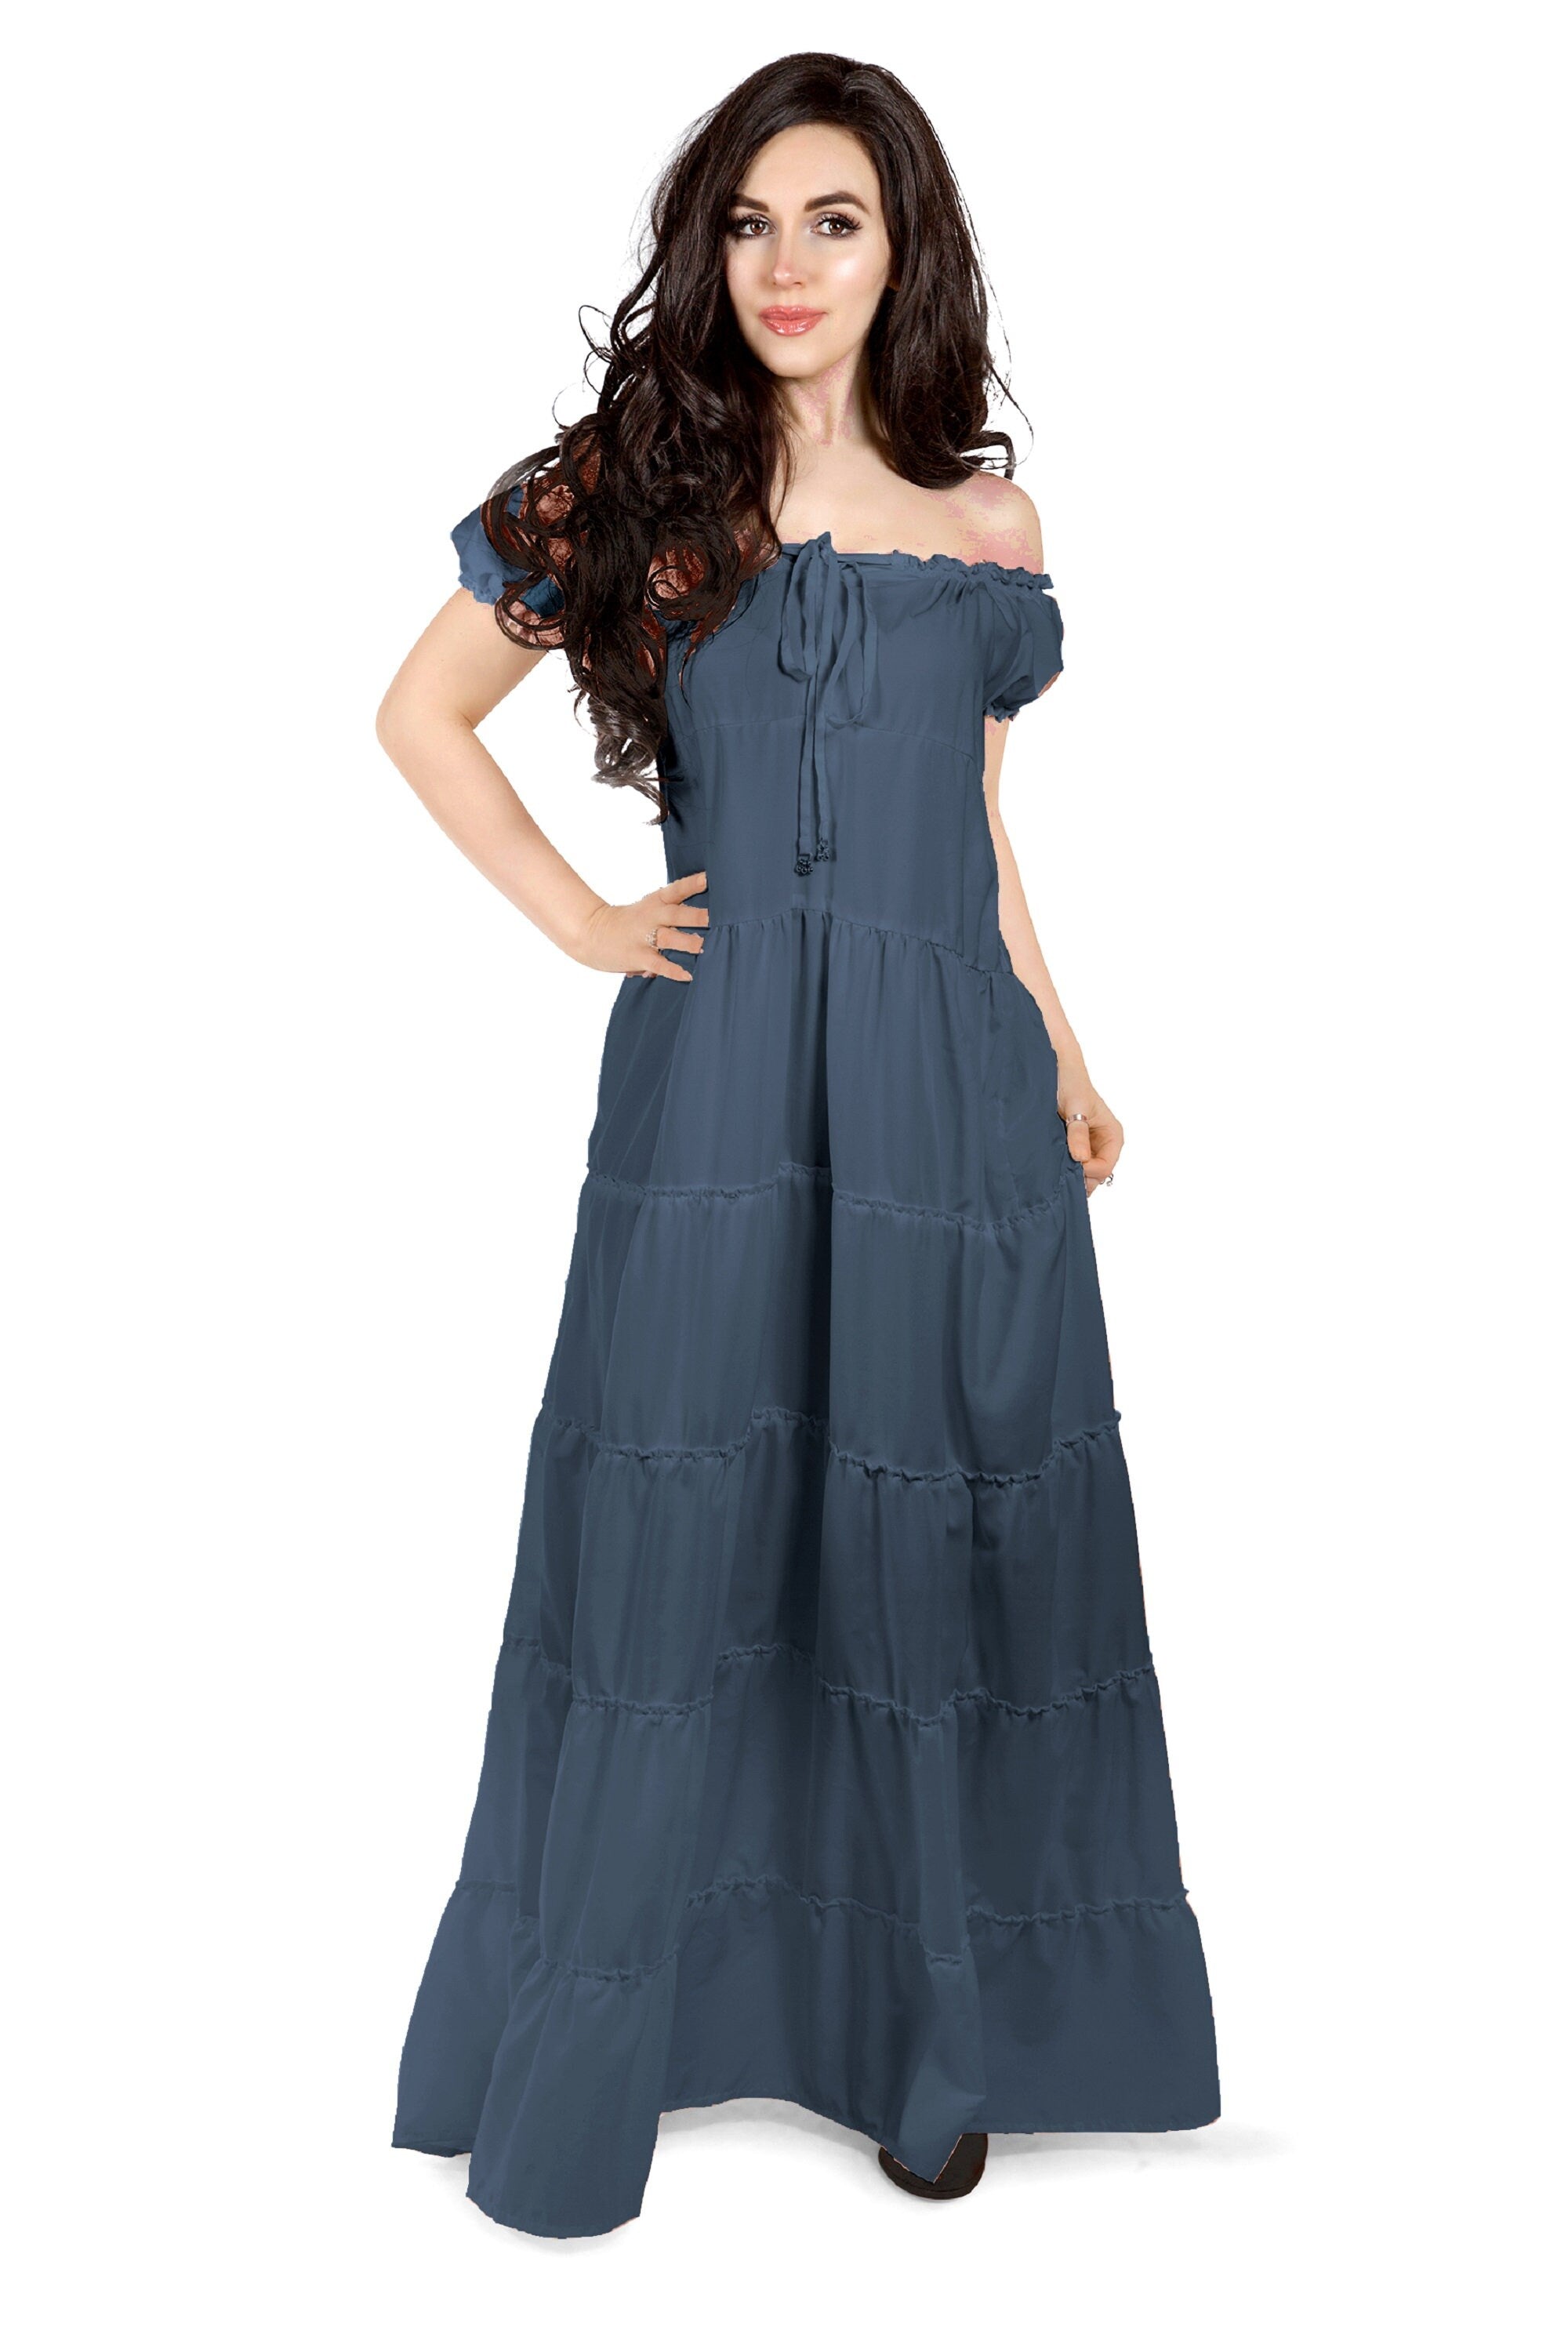 Reminisce Bohemian Dress Renaissance Loose Fitting Peasant Gown Cottagecore